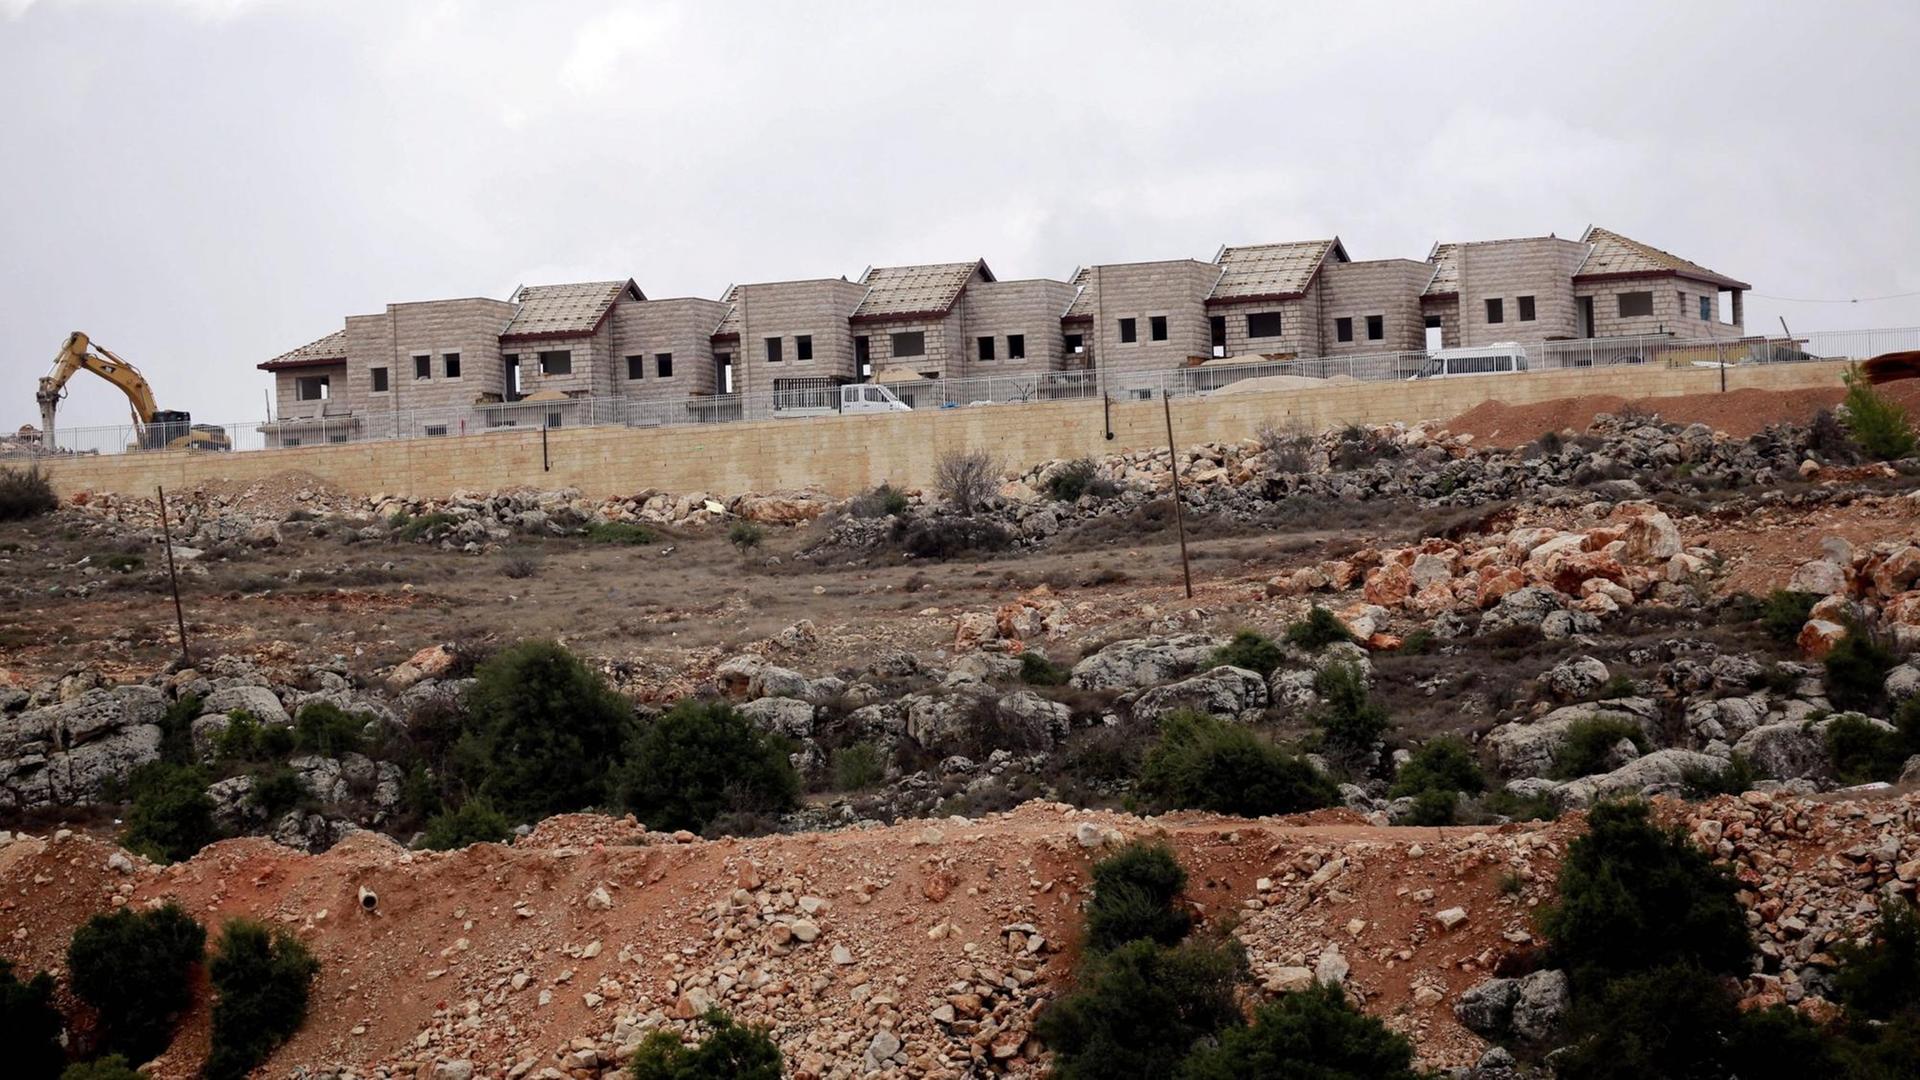 Das Bild zeigt die im Bau befindliche israelische Siedlung "Furat" südlich von Bethlehem im Westjordanland, aufgenommen am 15.12.2016